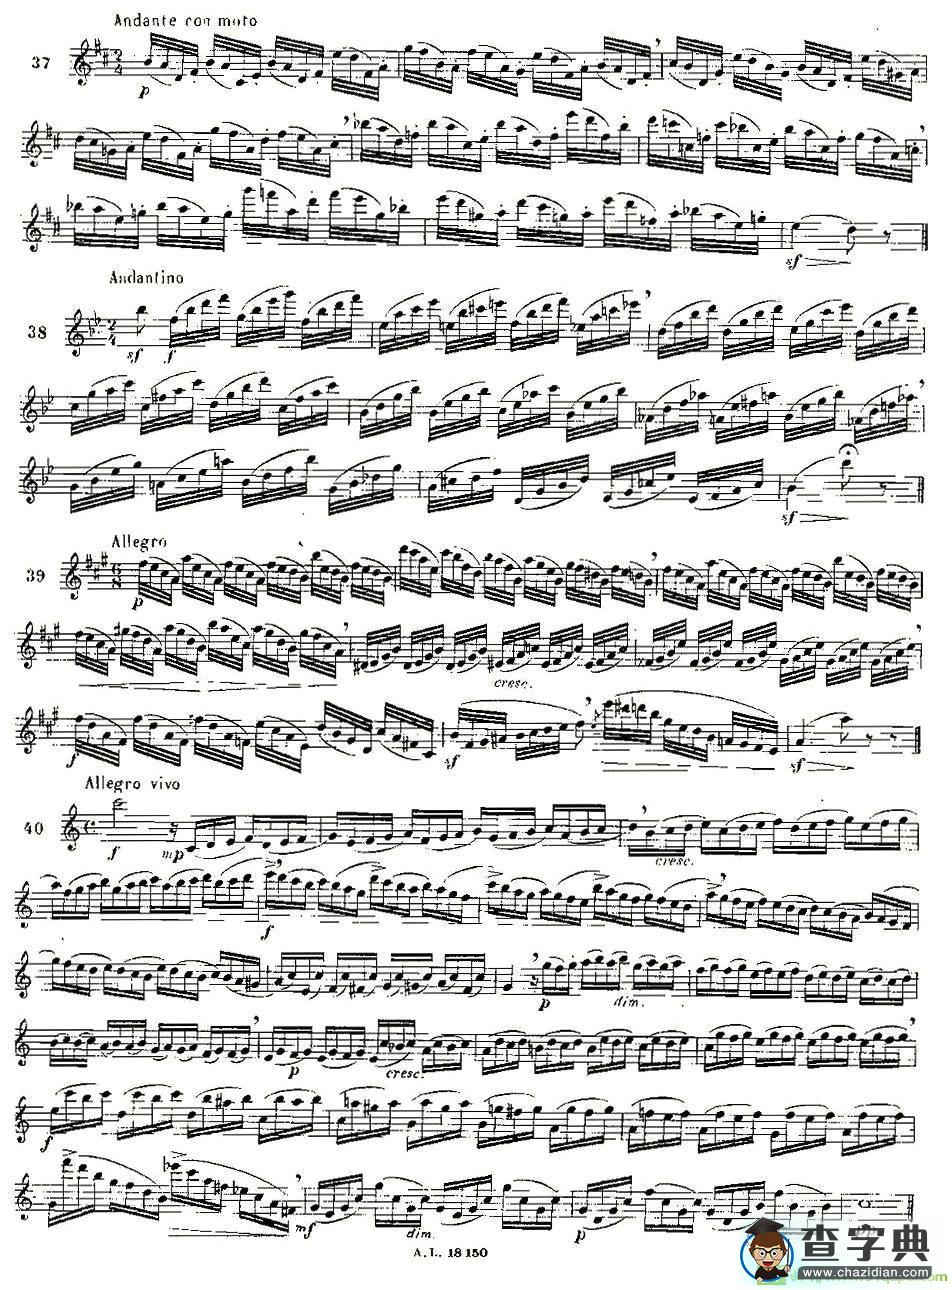 moyse - 100首练习曲之19—40长笛谱(moyse作曲)